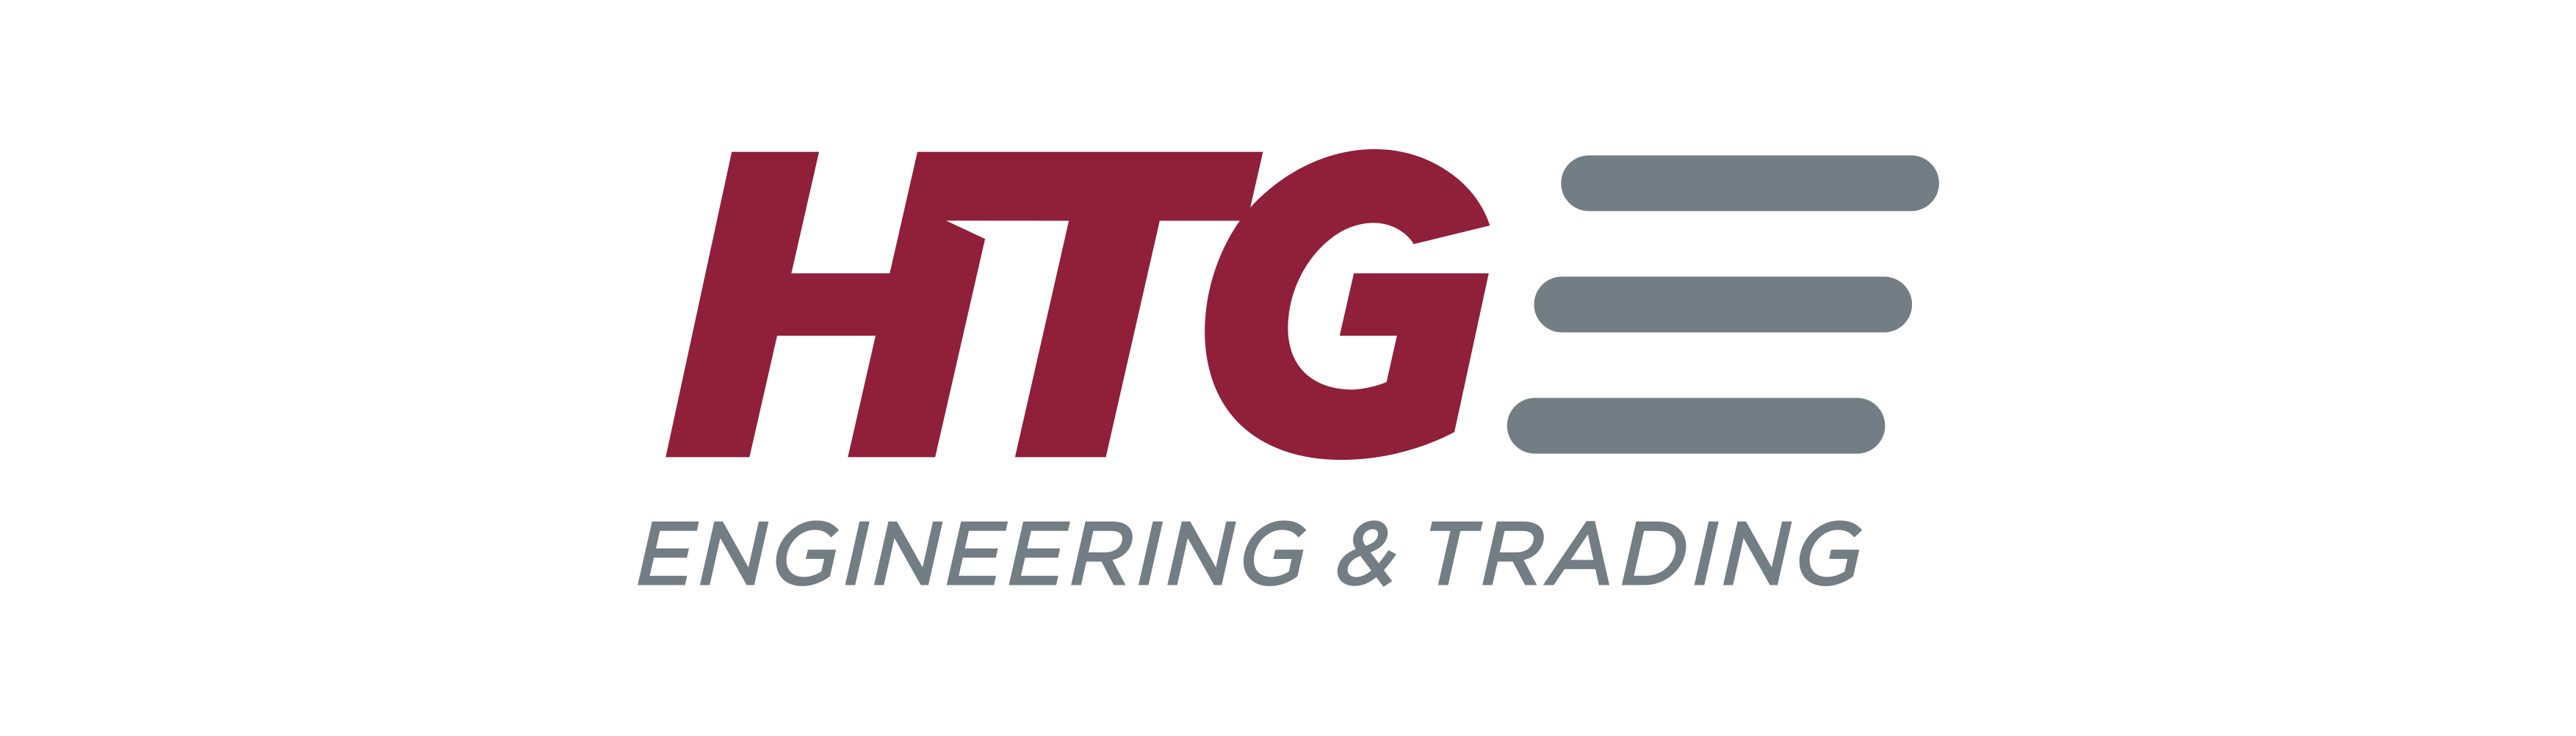 HTG Engineering & Trading JSC